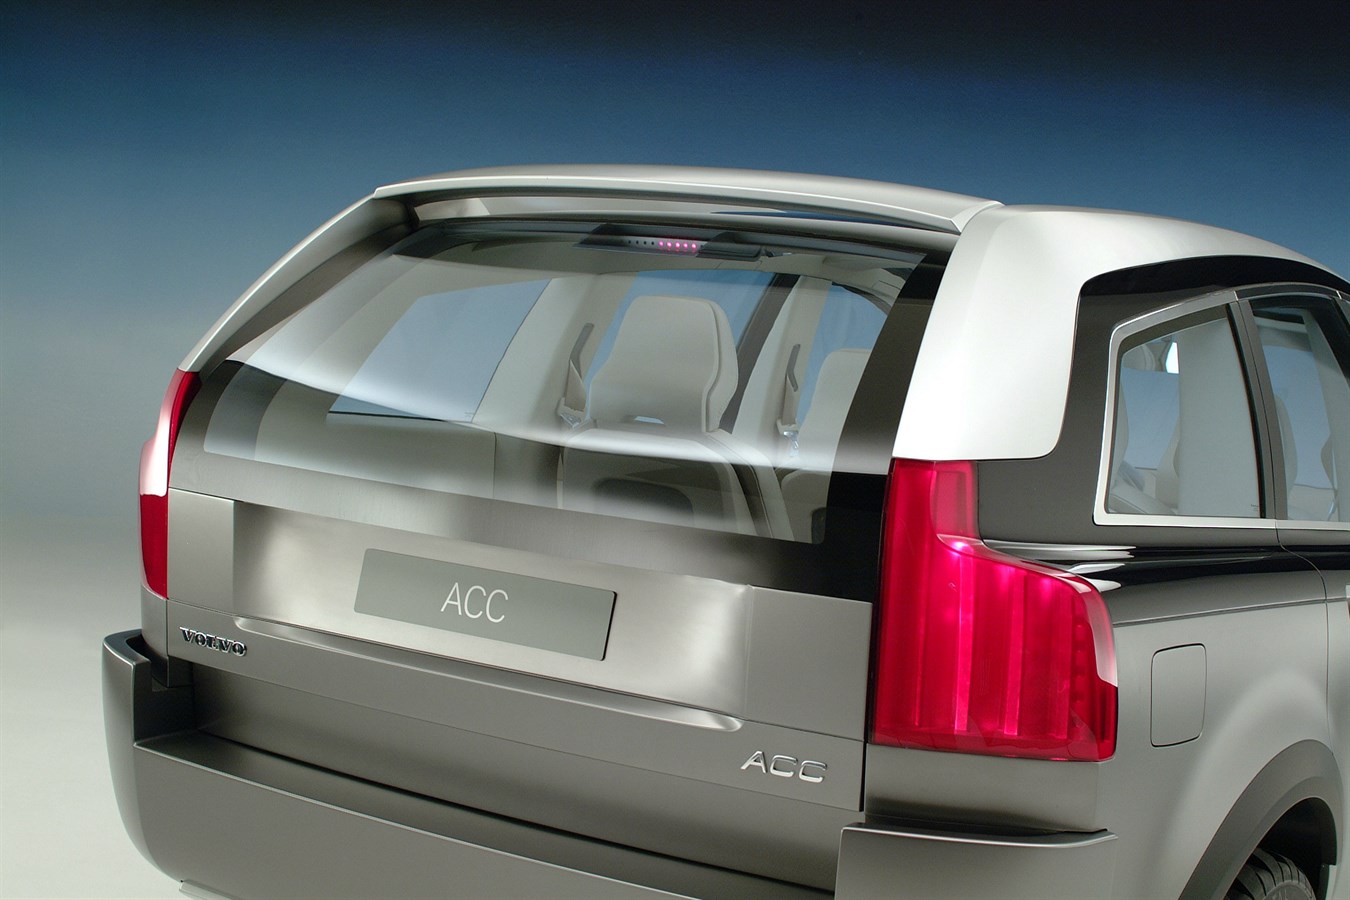 Il prototipo Volvo ACC (Adventure Concept Car), 2001. Il prototipo ACC venne esposto per la prima volta presso il salone dell'auto di Ginevra, circa due anni prima dell'introduzione sul mercato del SUV Volvo XC90; non venne tenuto segreto il fatto che si trattava di un'anteprima di ulteriori evoluzioni future.